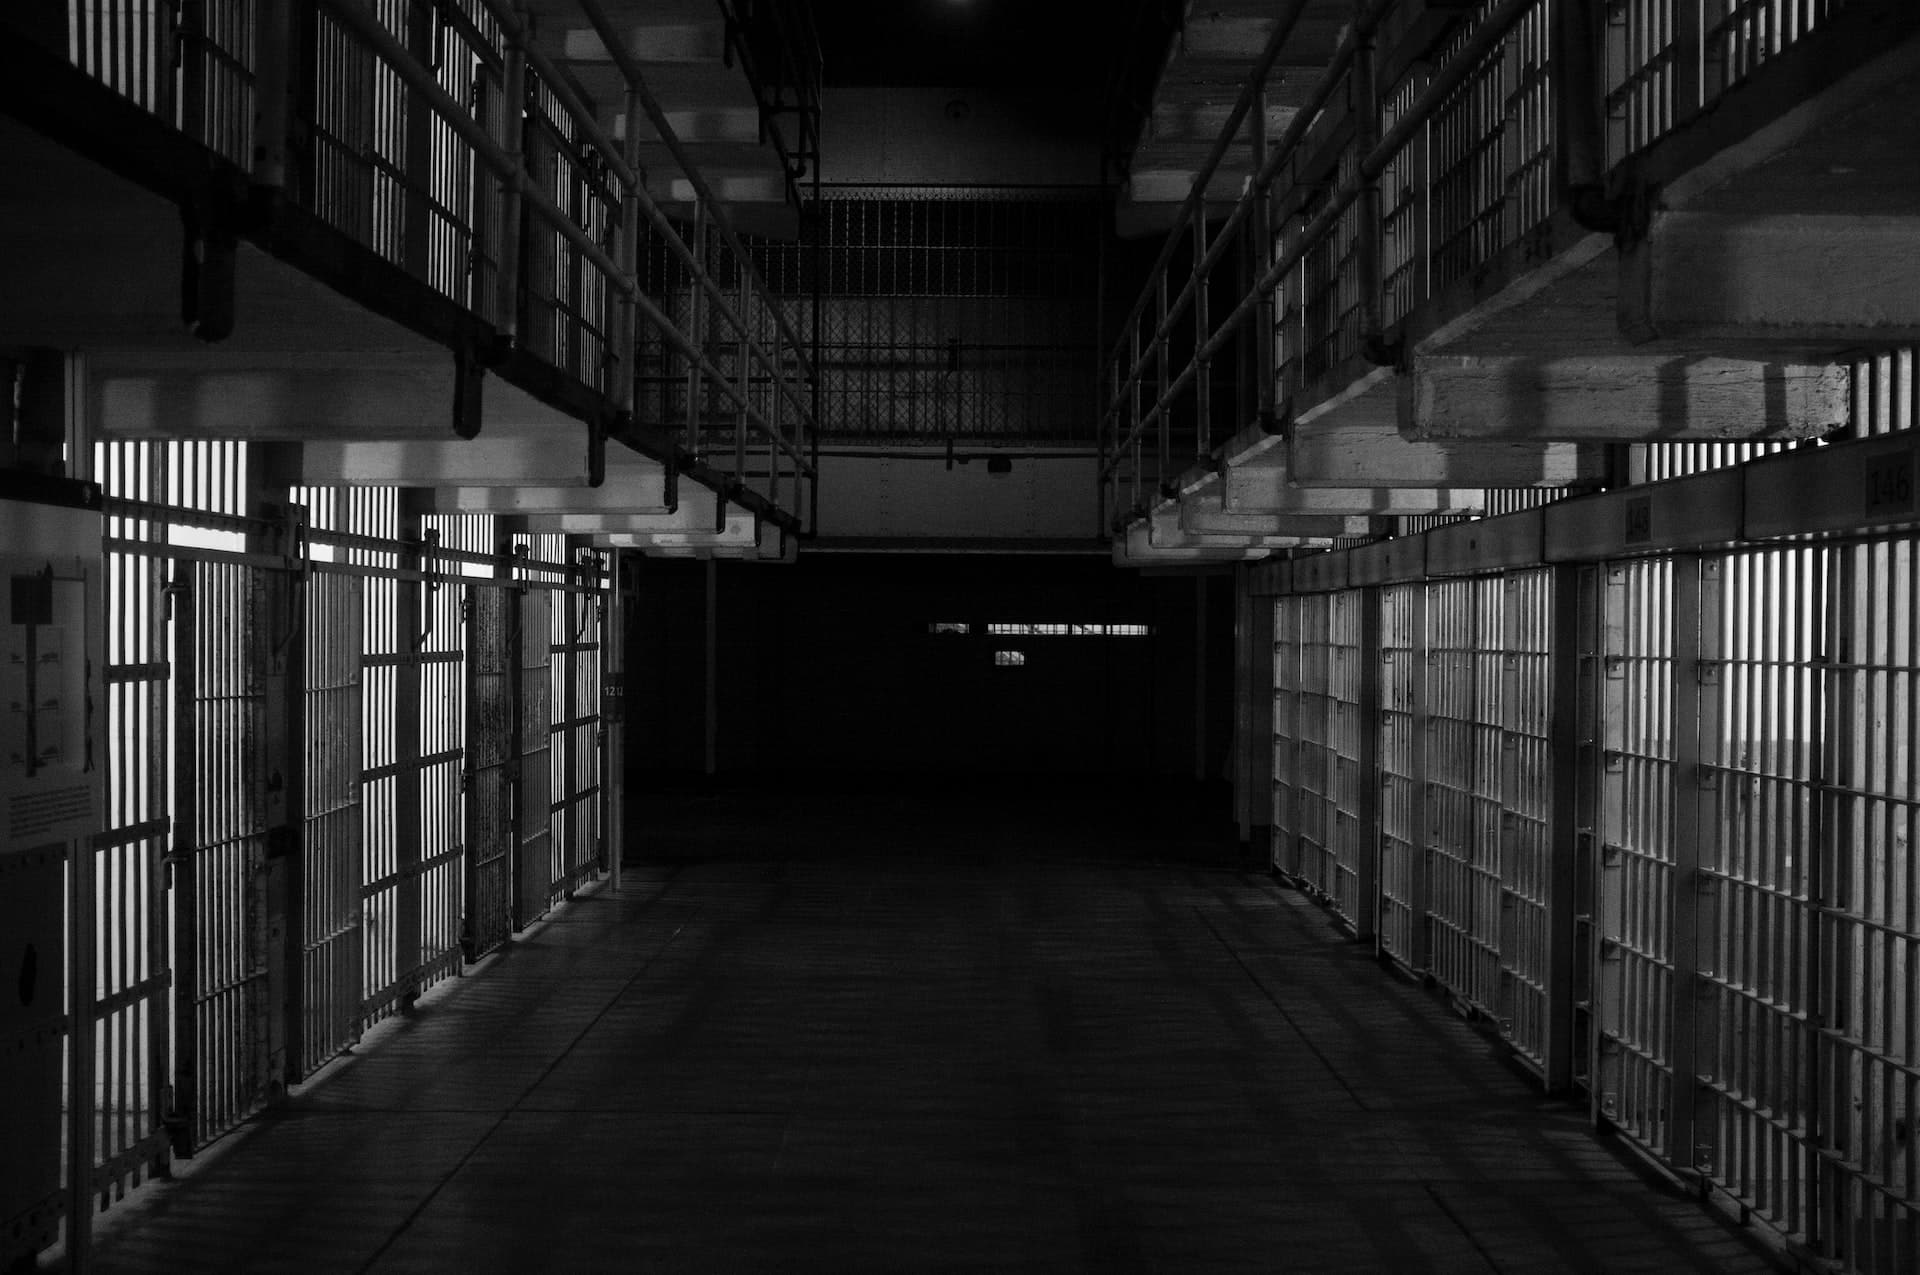 jail vs prison, cells in a dark corridor